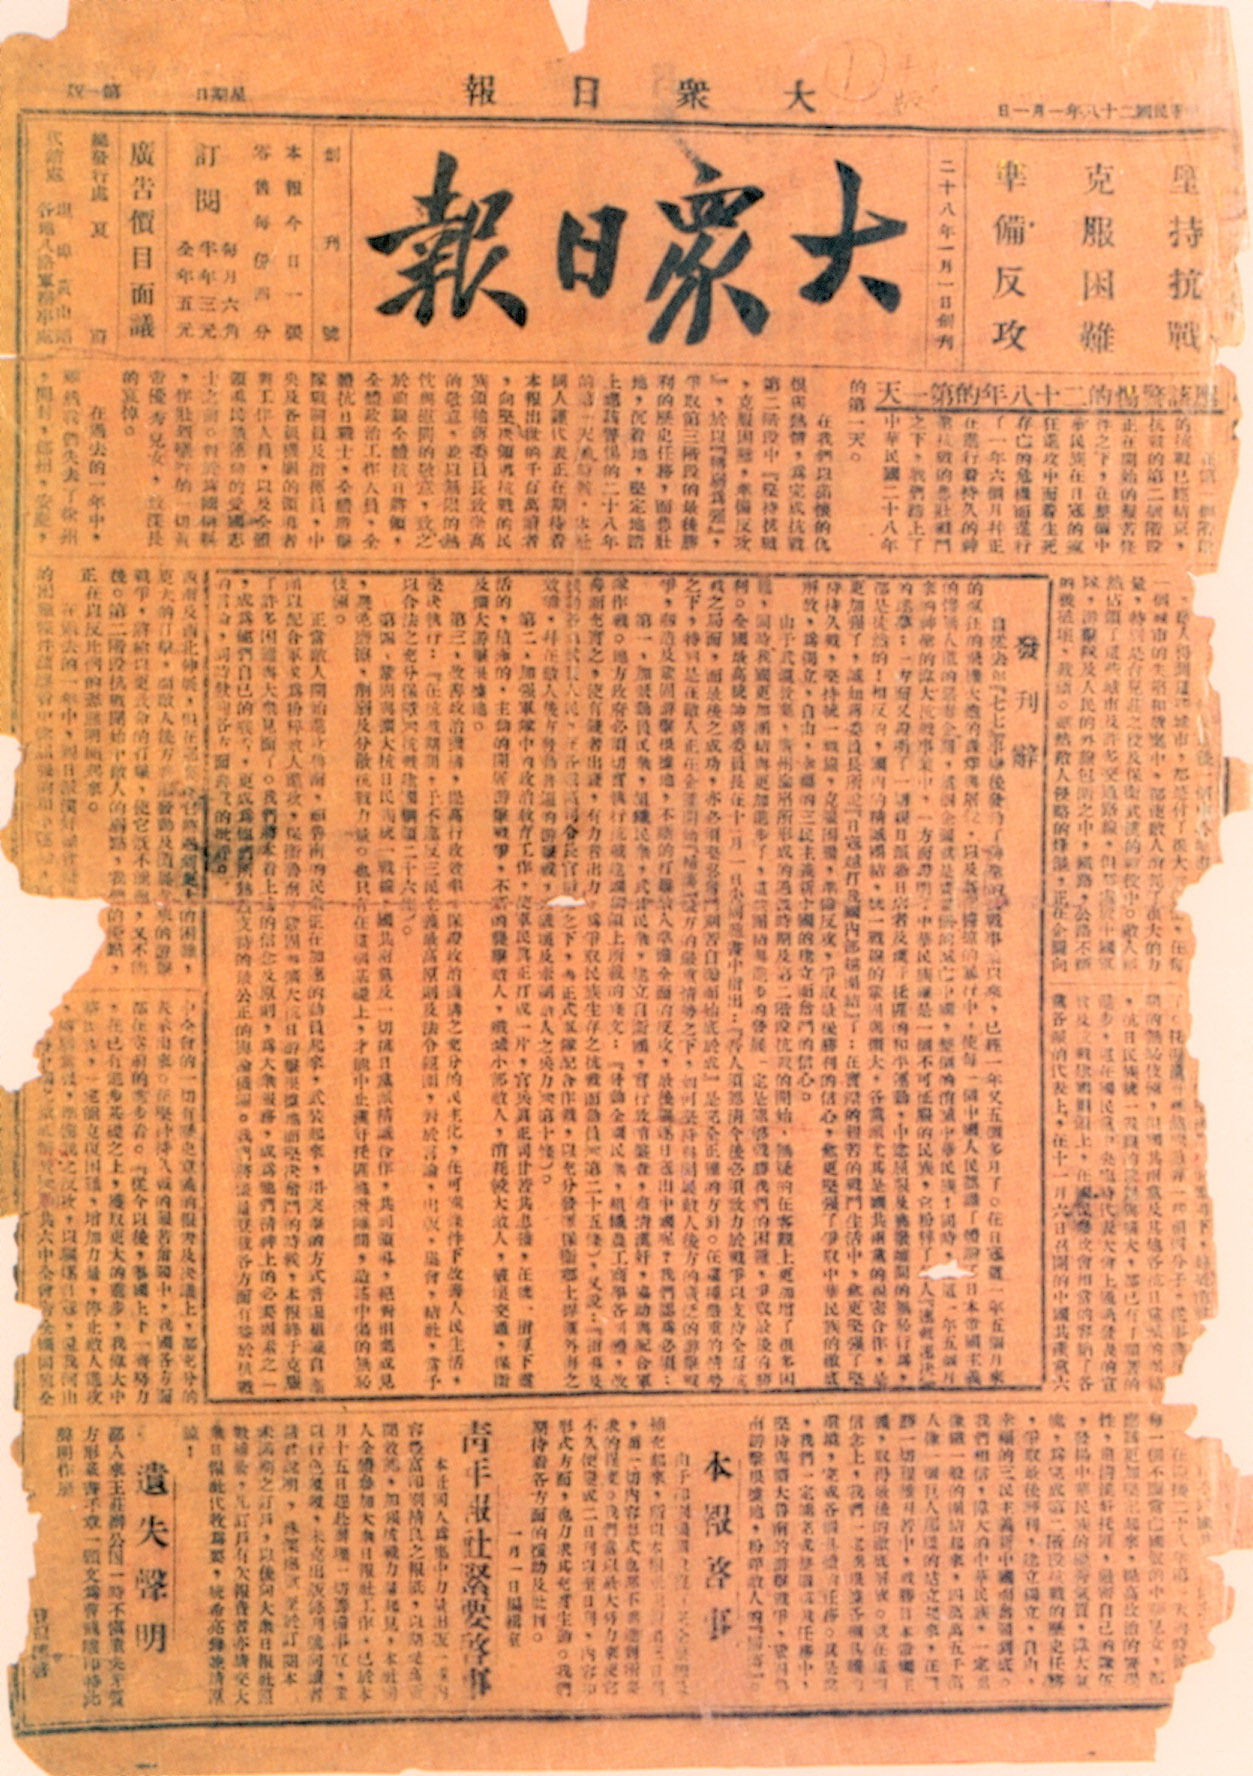 1939年1月1日，大众日报创刊号发行。